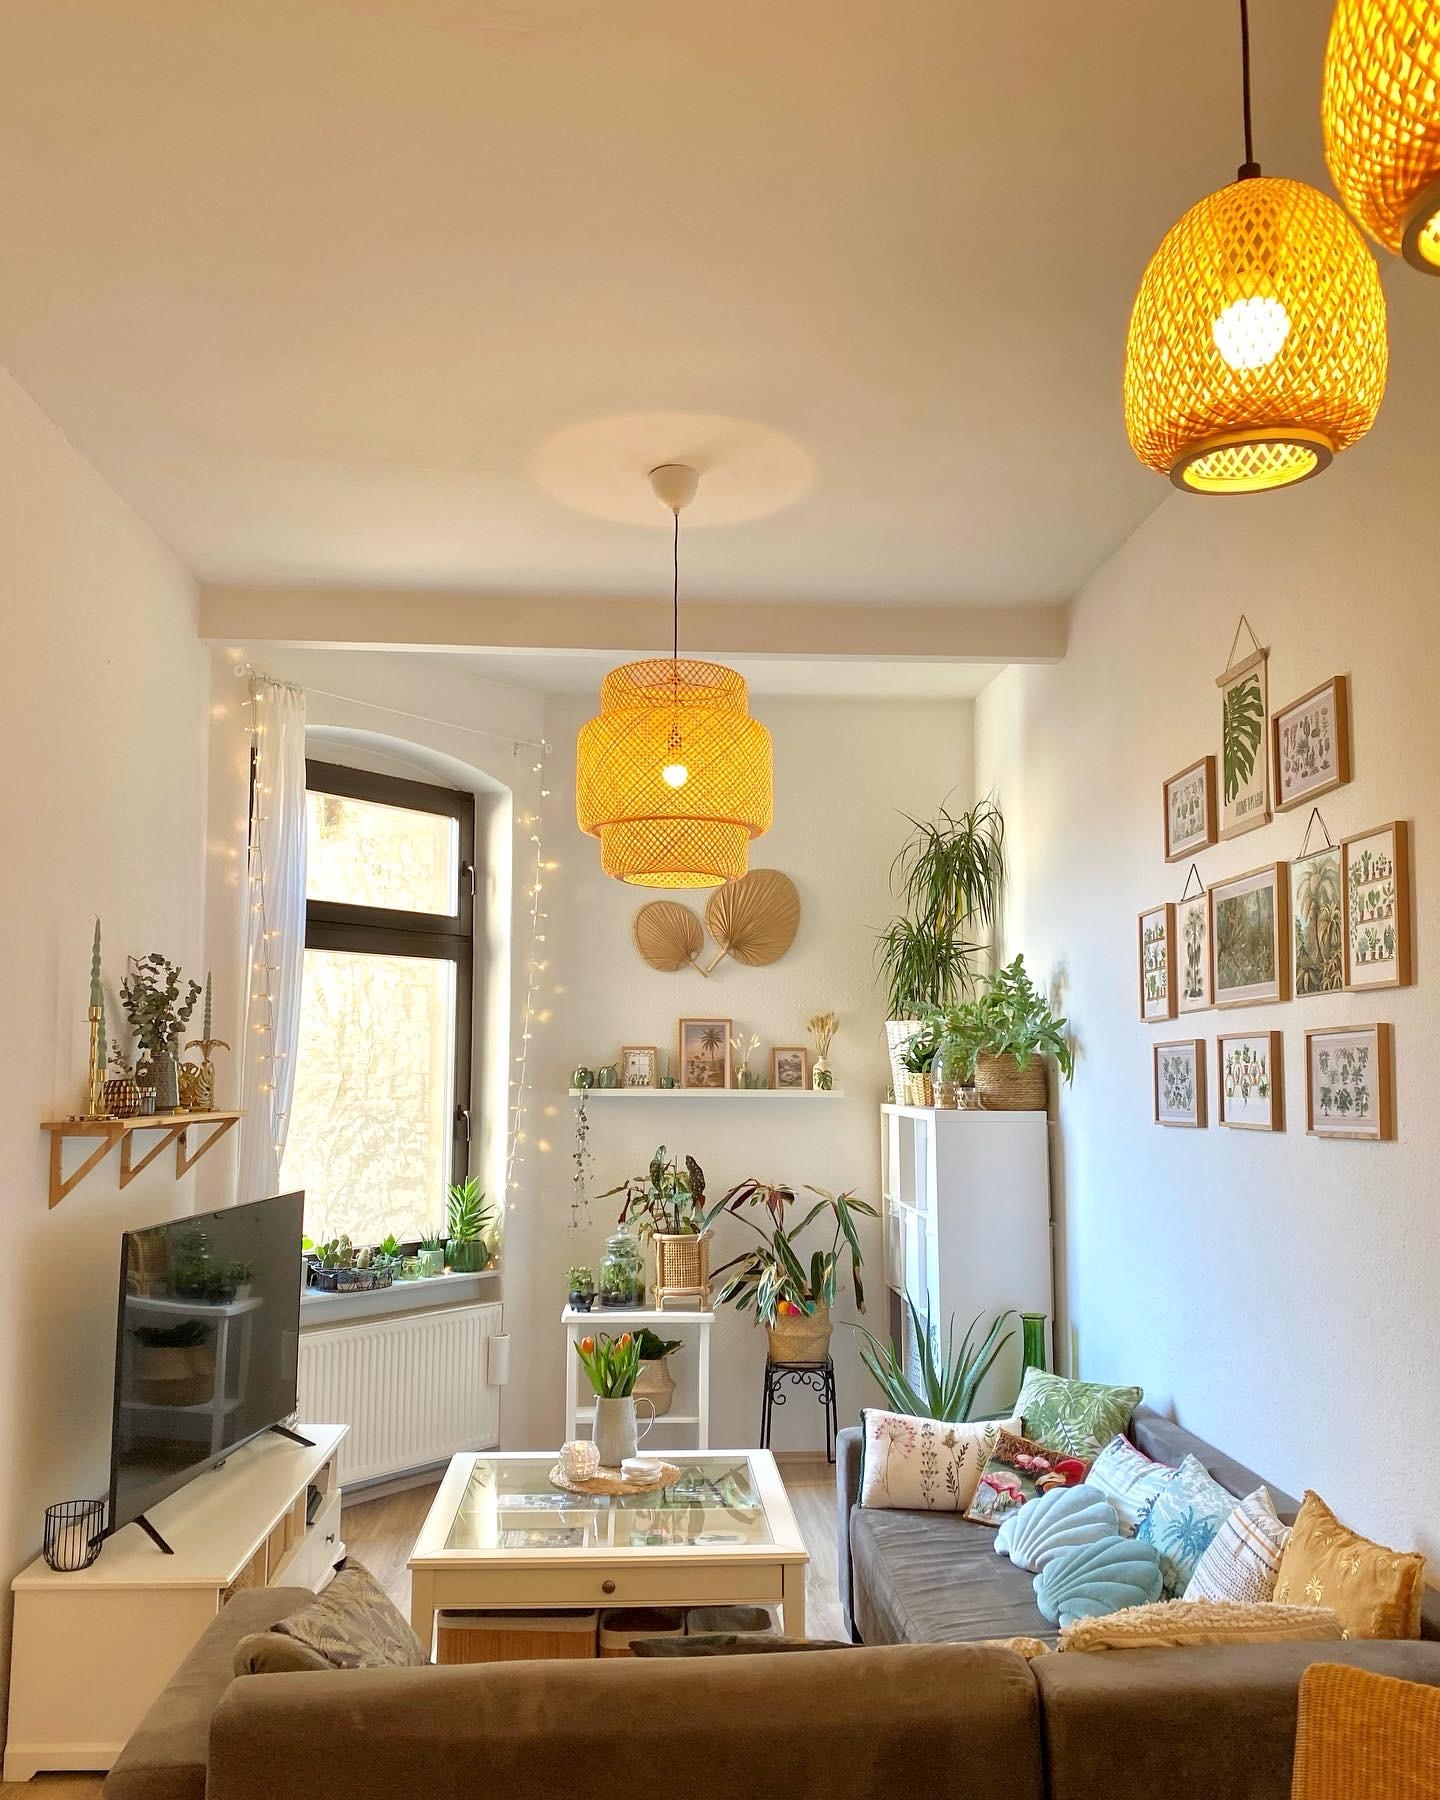 Mein #wohnzimmer 
#pflanzen #deko #einrichtung #zuhause #rattan #pflanzenliebe #dekoration #interior 